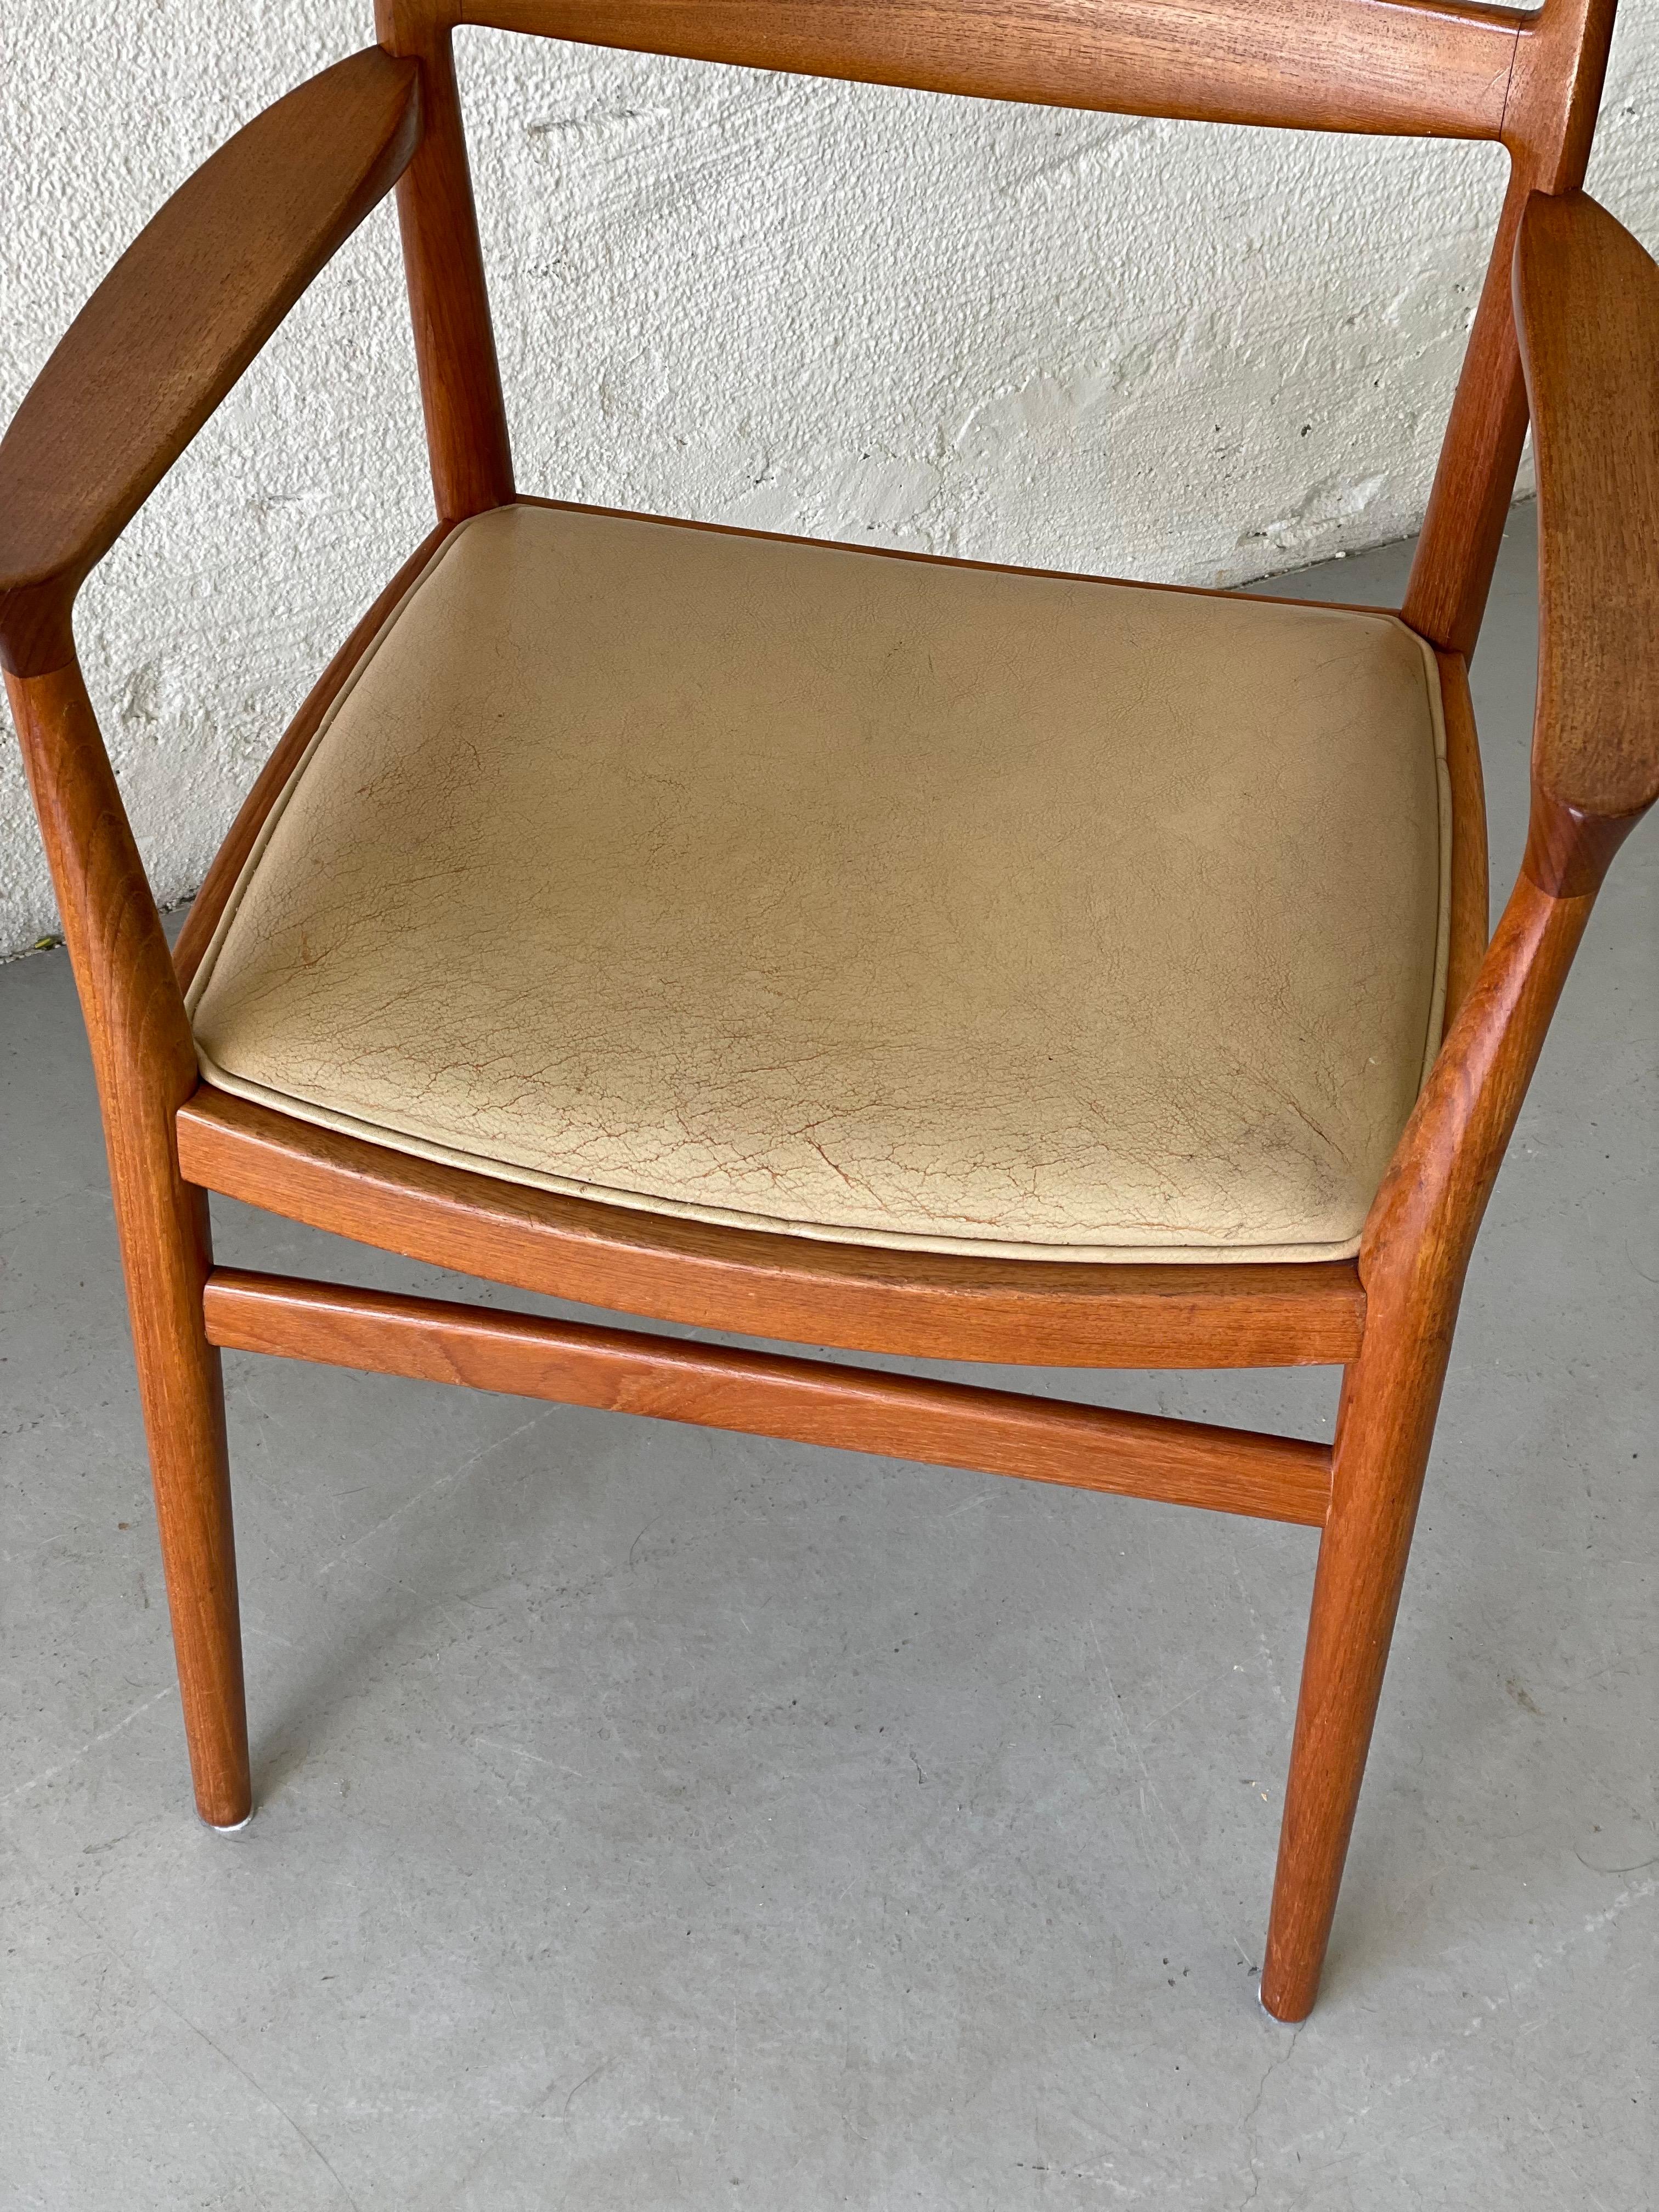 Skandinavische Sessel aus Teakholz, Modell Petit von Torbjørn Afdal, Norwegen 1960  (20. Jahrhundert)